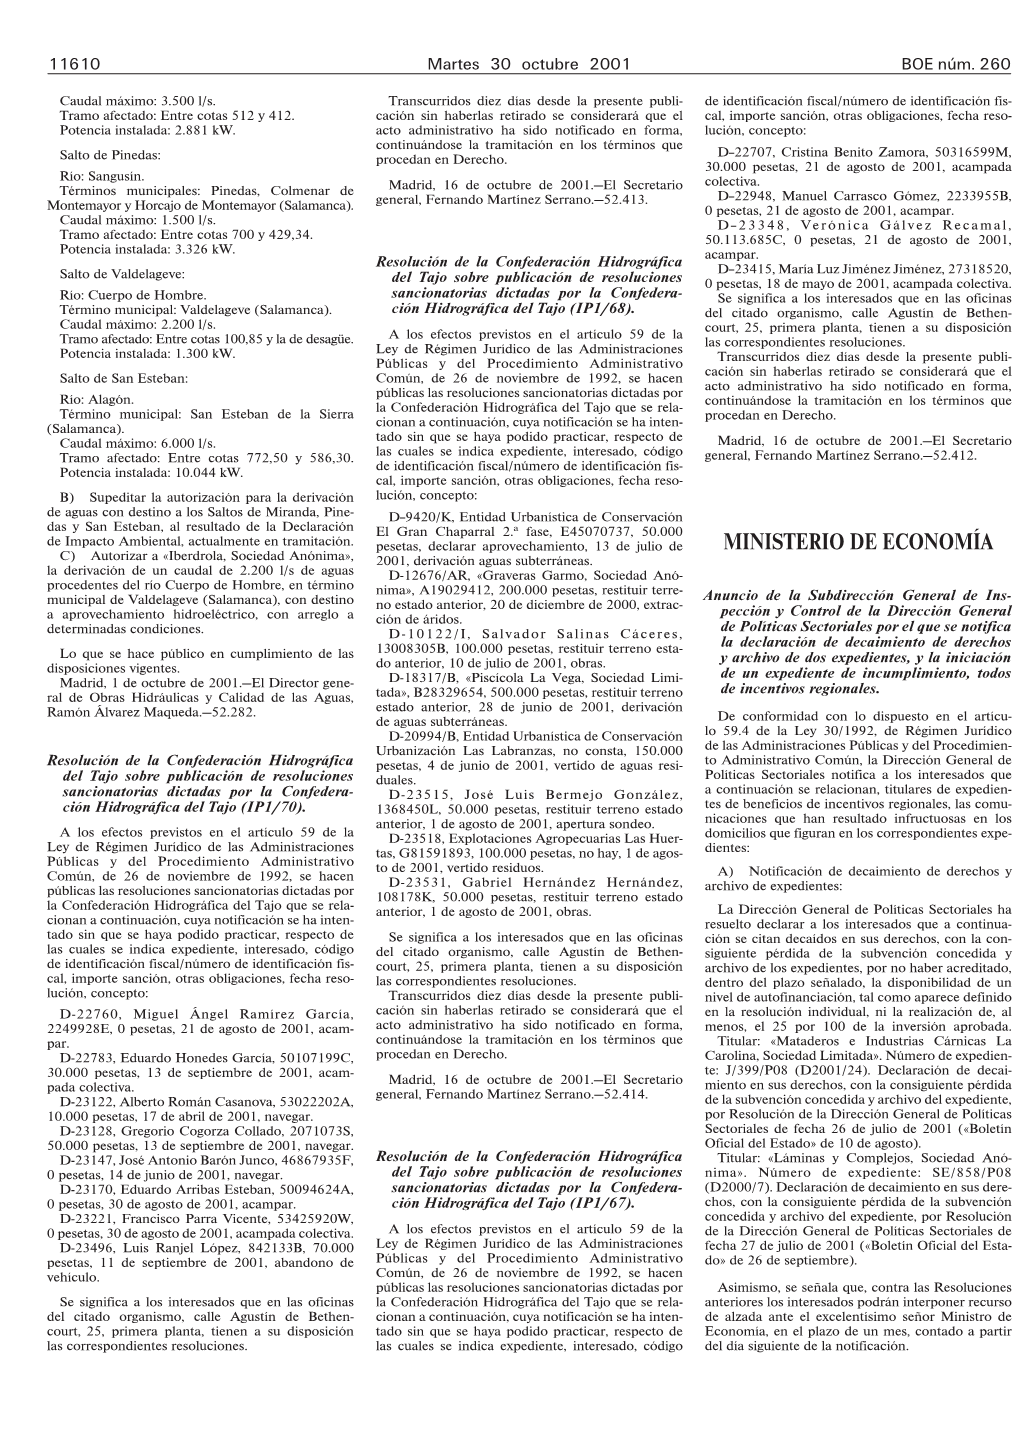 MINISTERIO DE ECONOMÍA C) Autorizar a «Iberdrola, Sociedad Anónima», 2001, Derivación Aguas Subterráneas